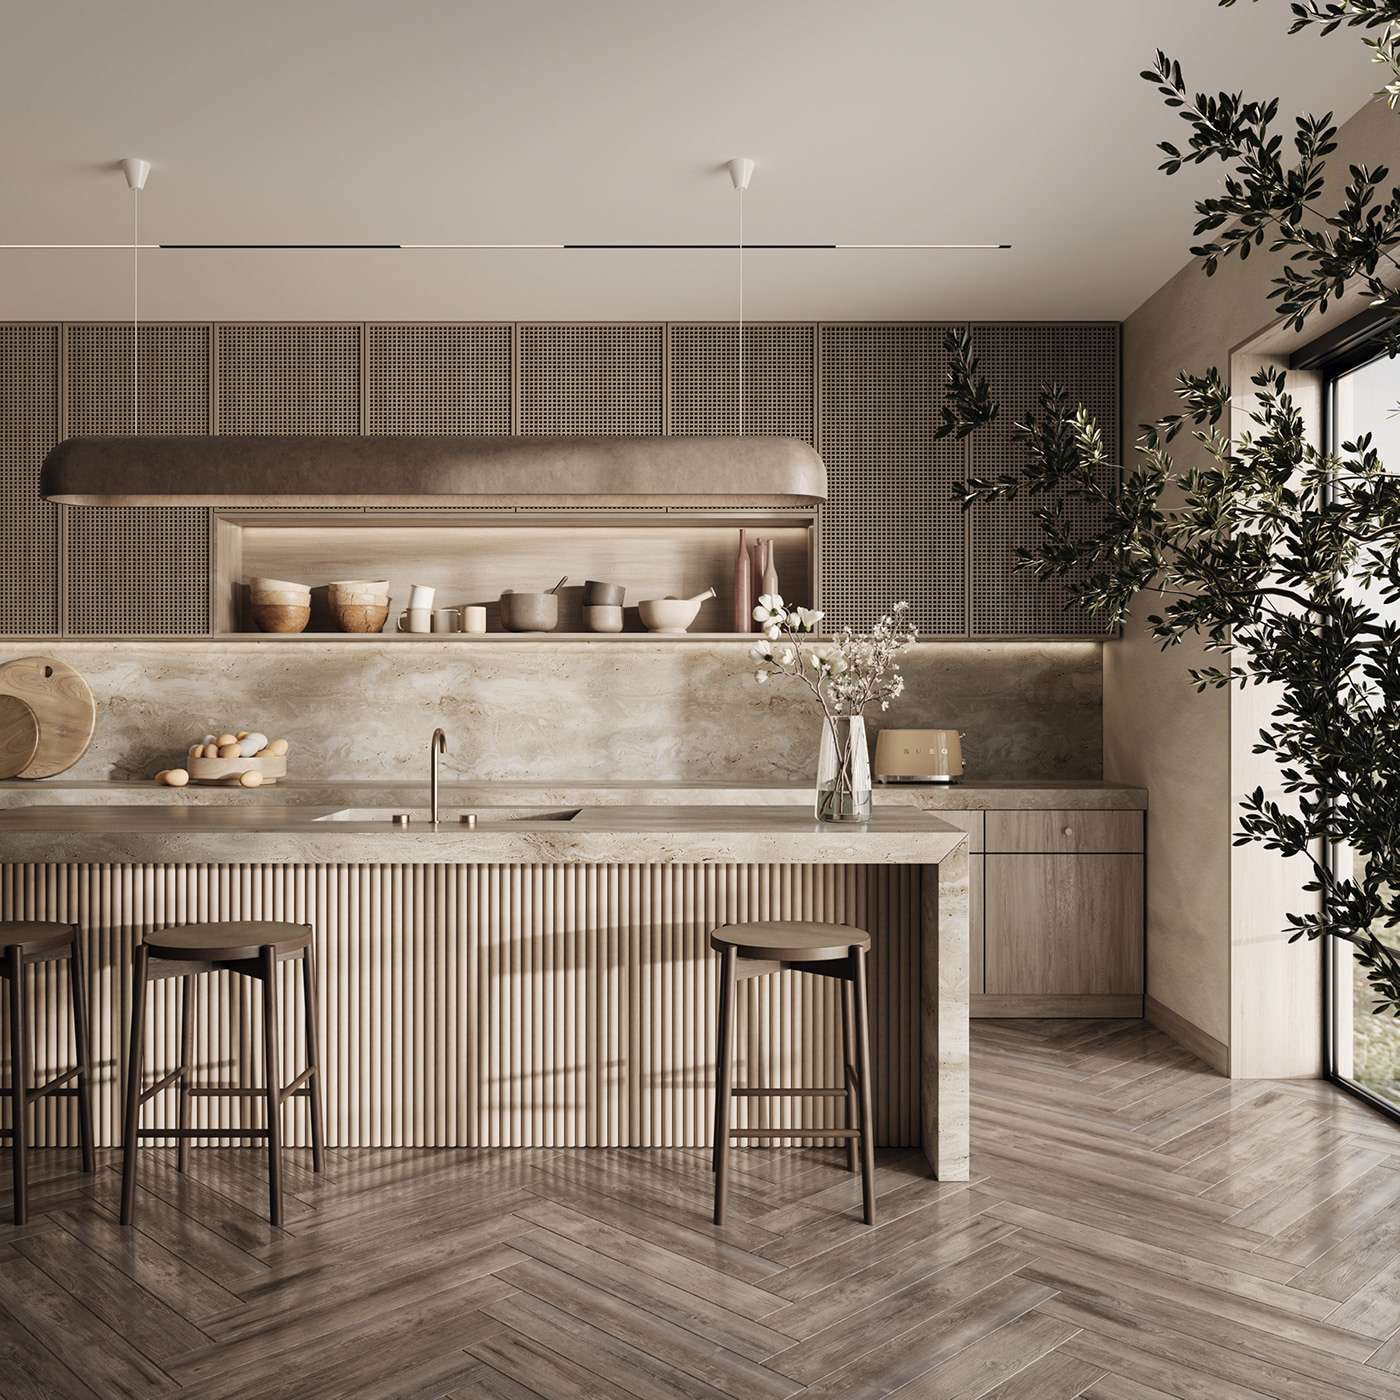 Thiết kế nội thất phòng bếp nối liền phòng bếp với bàn ăn đặt giữa theo hơi hướng Eco 